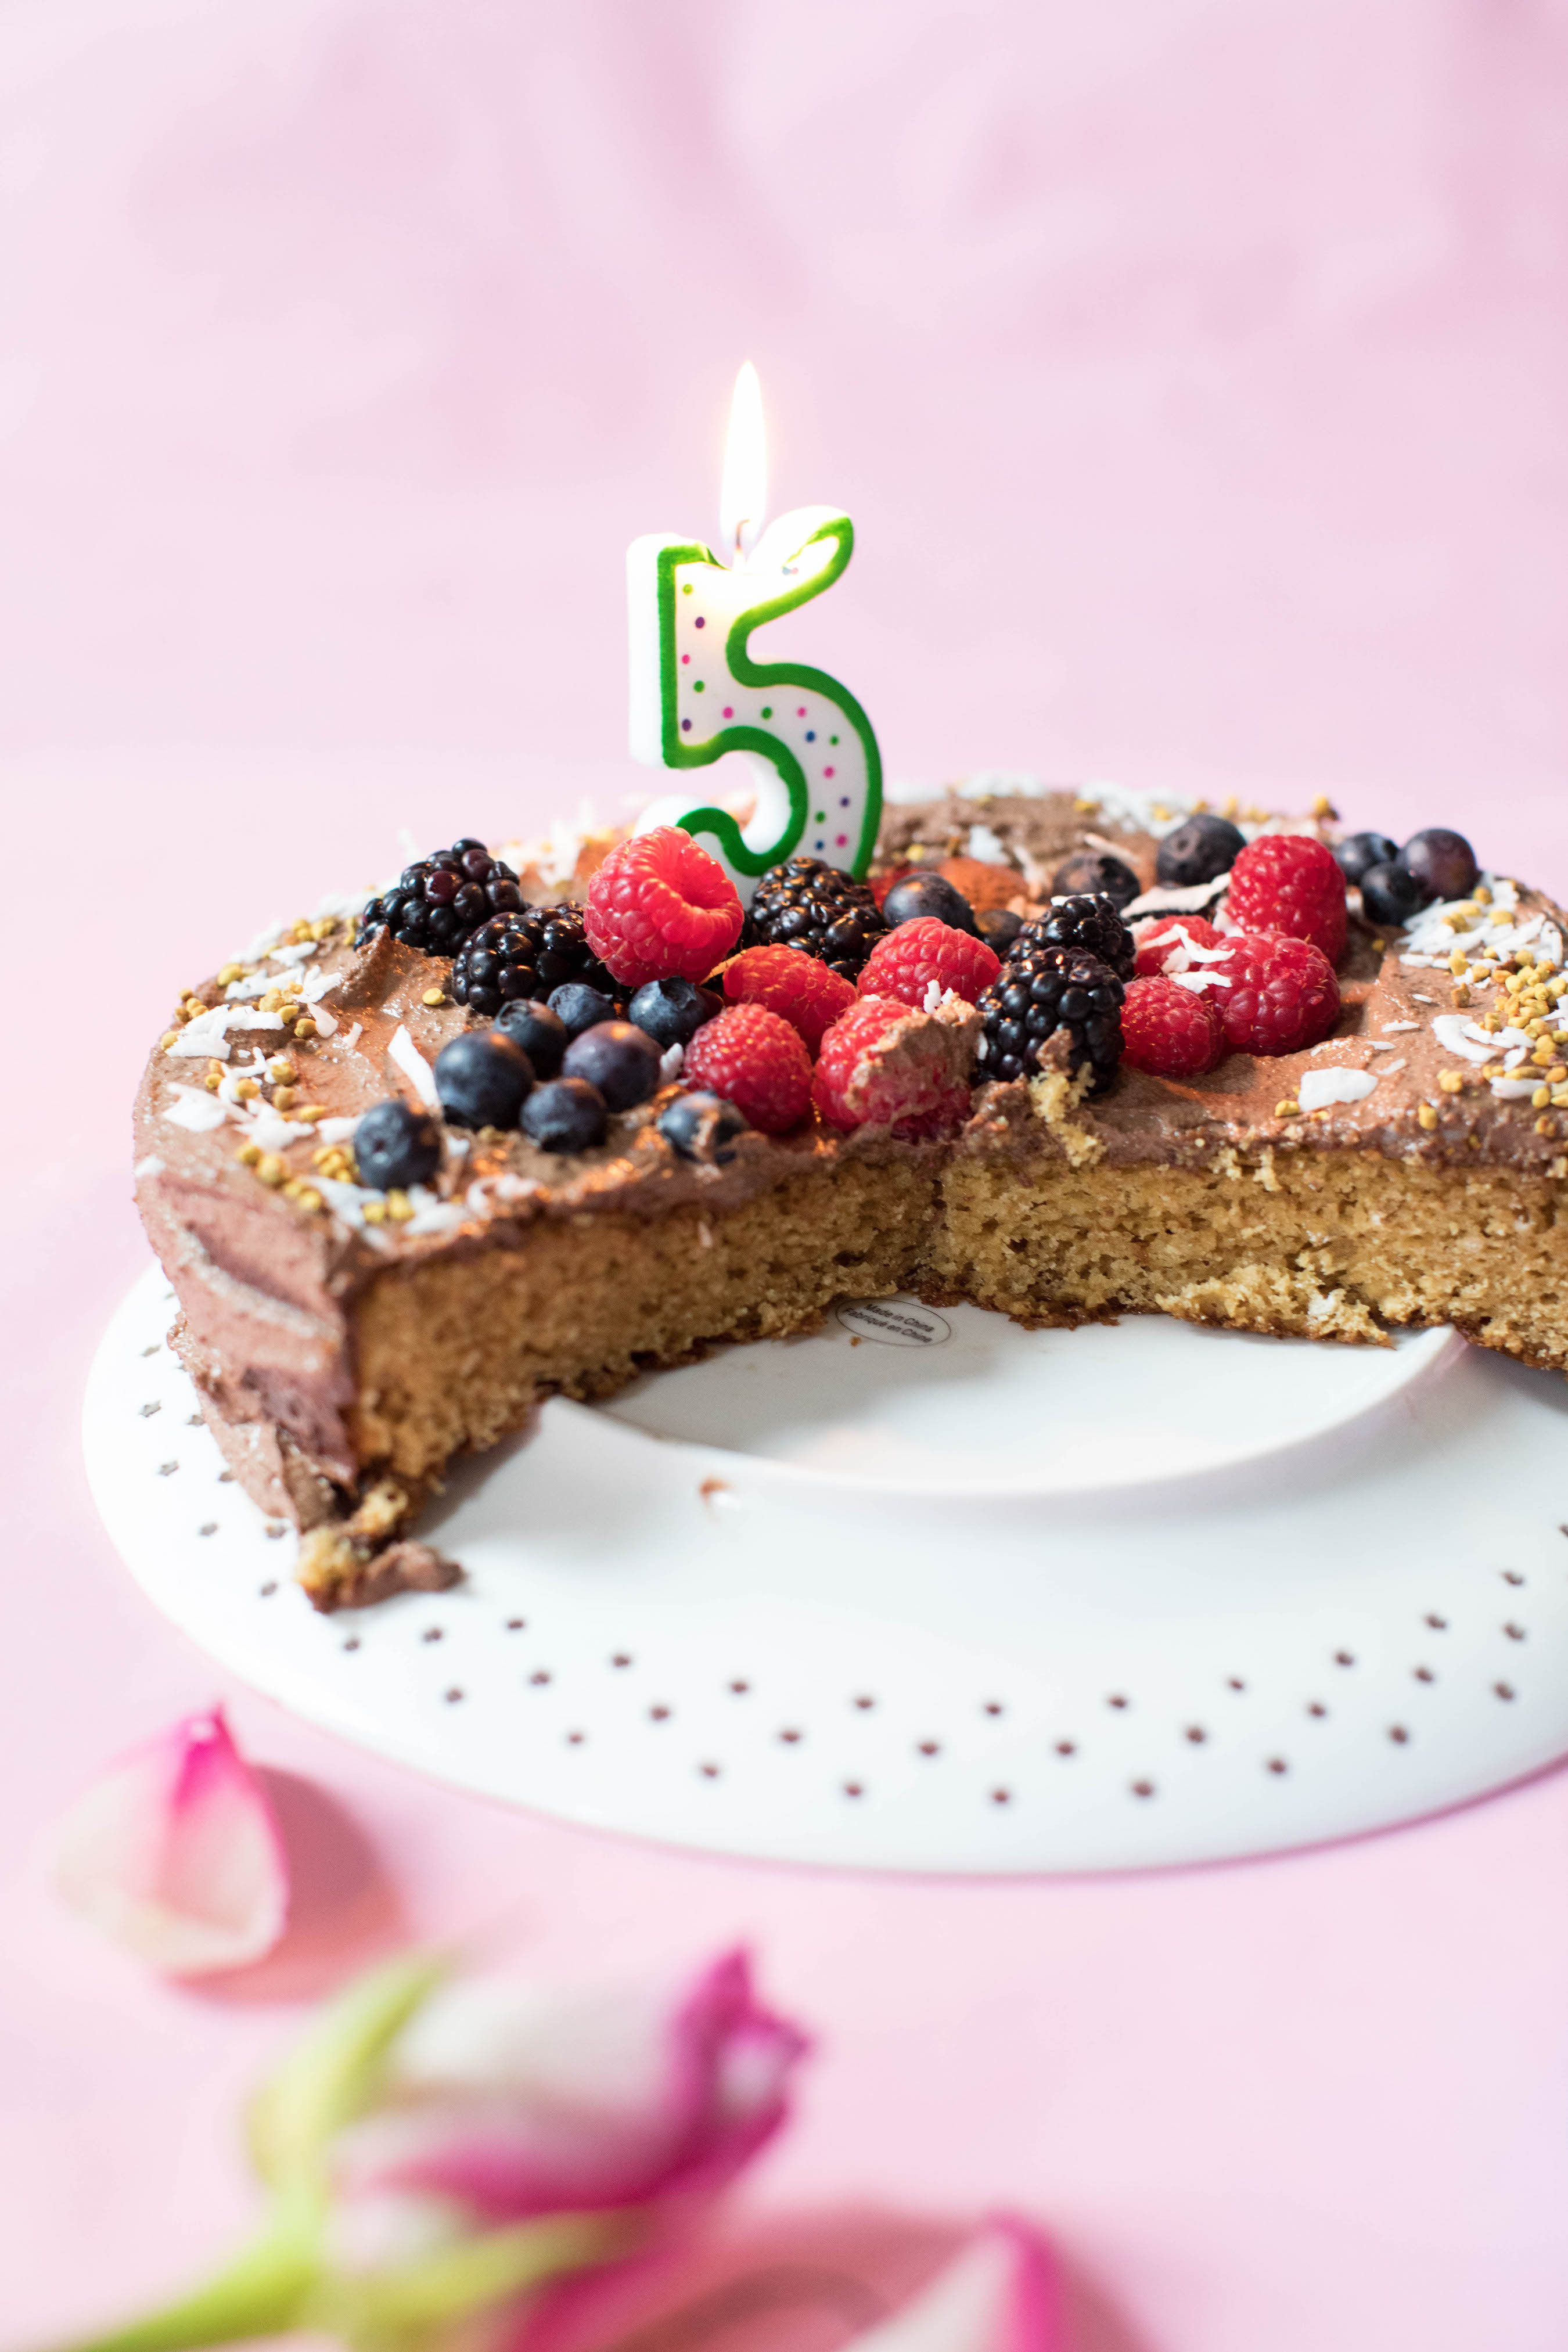 Best ideas about Gluten Free Birthday Cake Recipe
. Save or Pin The Best Gluten Free Birthday Cake Recipe Now.